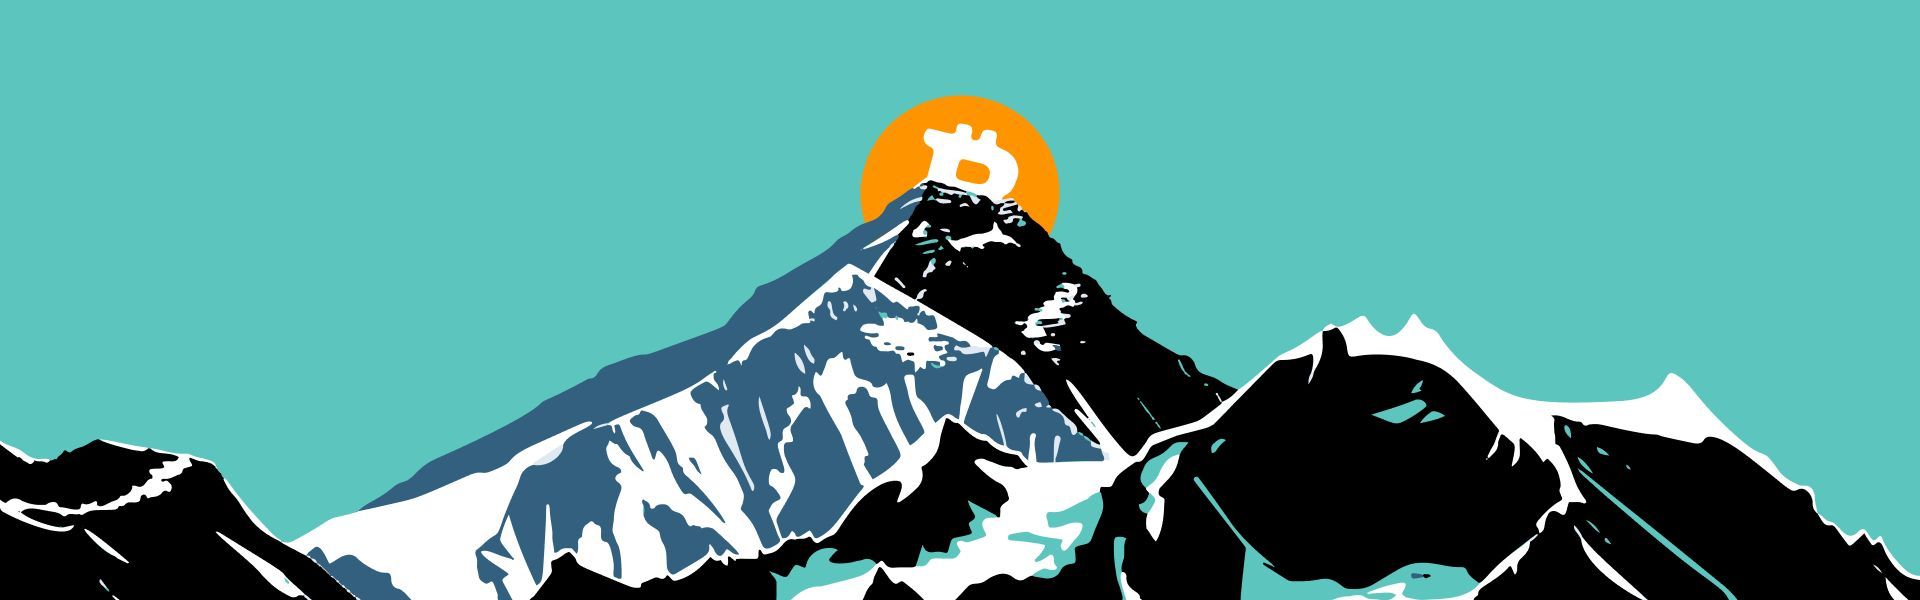 Auf dem Mount Everest ist eine Bitcoin-Flagge angebracht